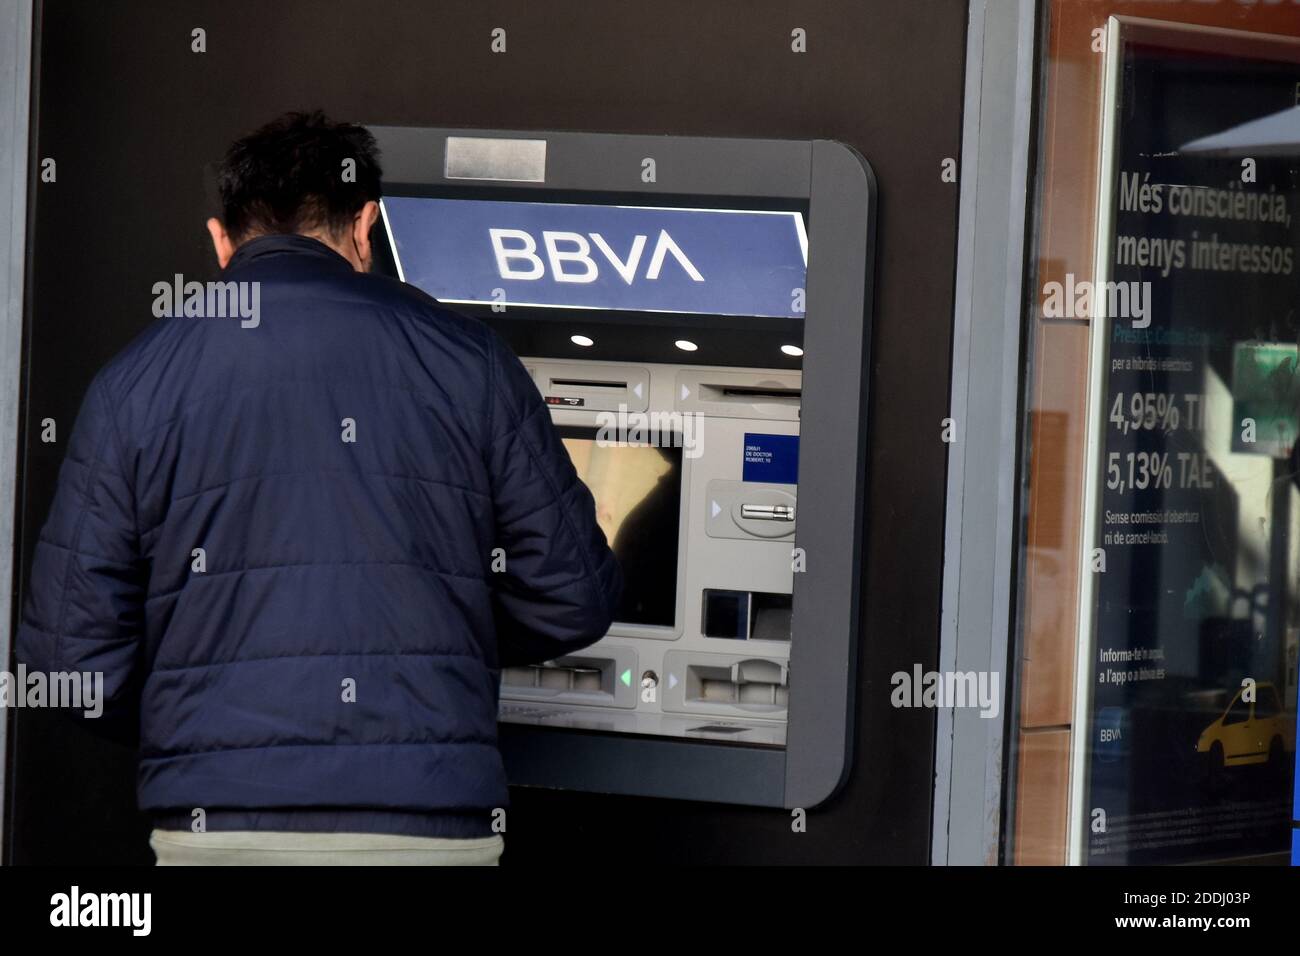 Un hombre retira dinero de un cajero automático del Banco BBVA en una oficina bancaria en Vendrell Tarragona.la fusión de BBVA (Banco Bilbao Vizcaya Argentaria) y Sabadell Bank crearía el segundo gigante bancario de casi 600,000 millones en el mercado español por volumen de activos, Solo detrás de la entidad que resultó de la fusión de CaixaBank y Bankia. Foto de stock